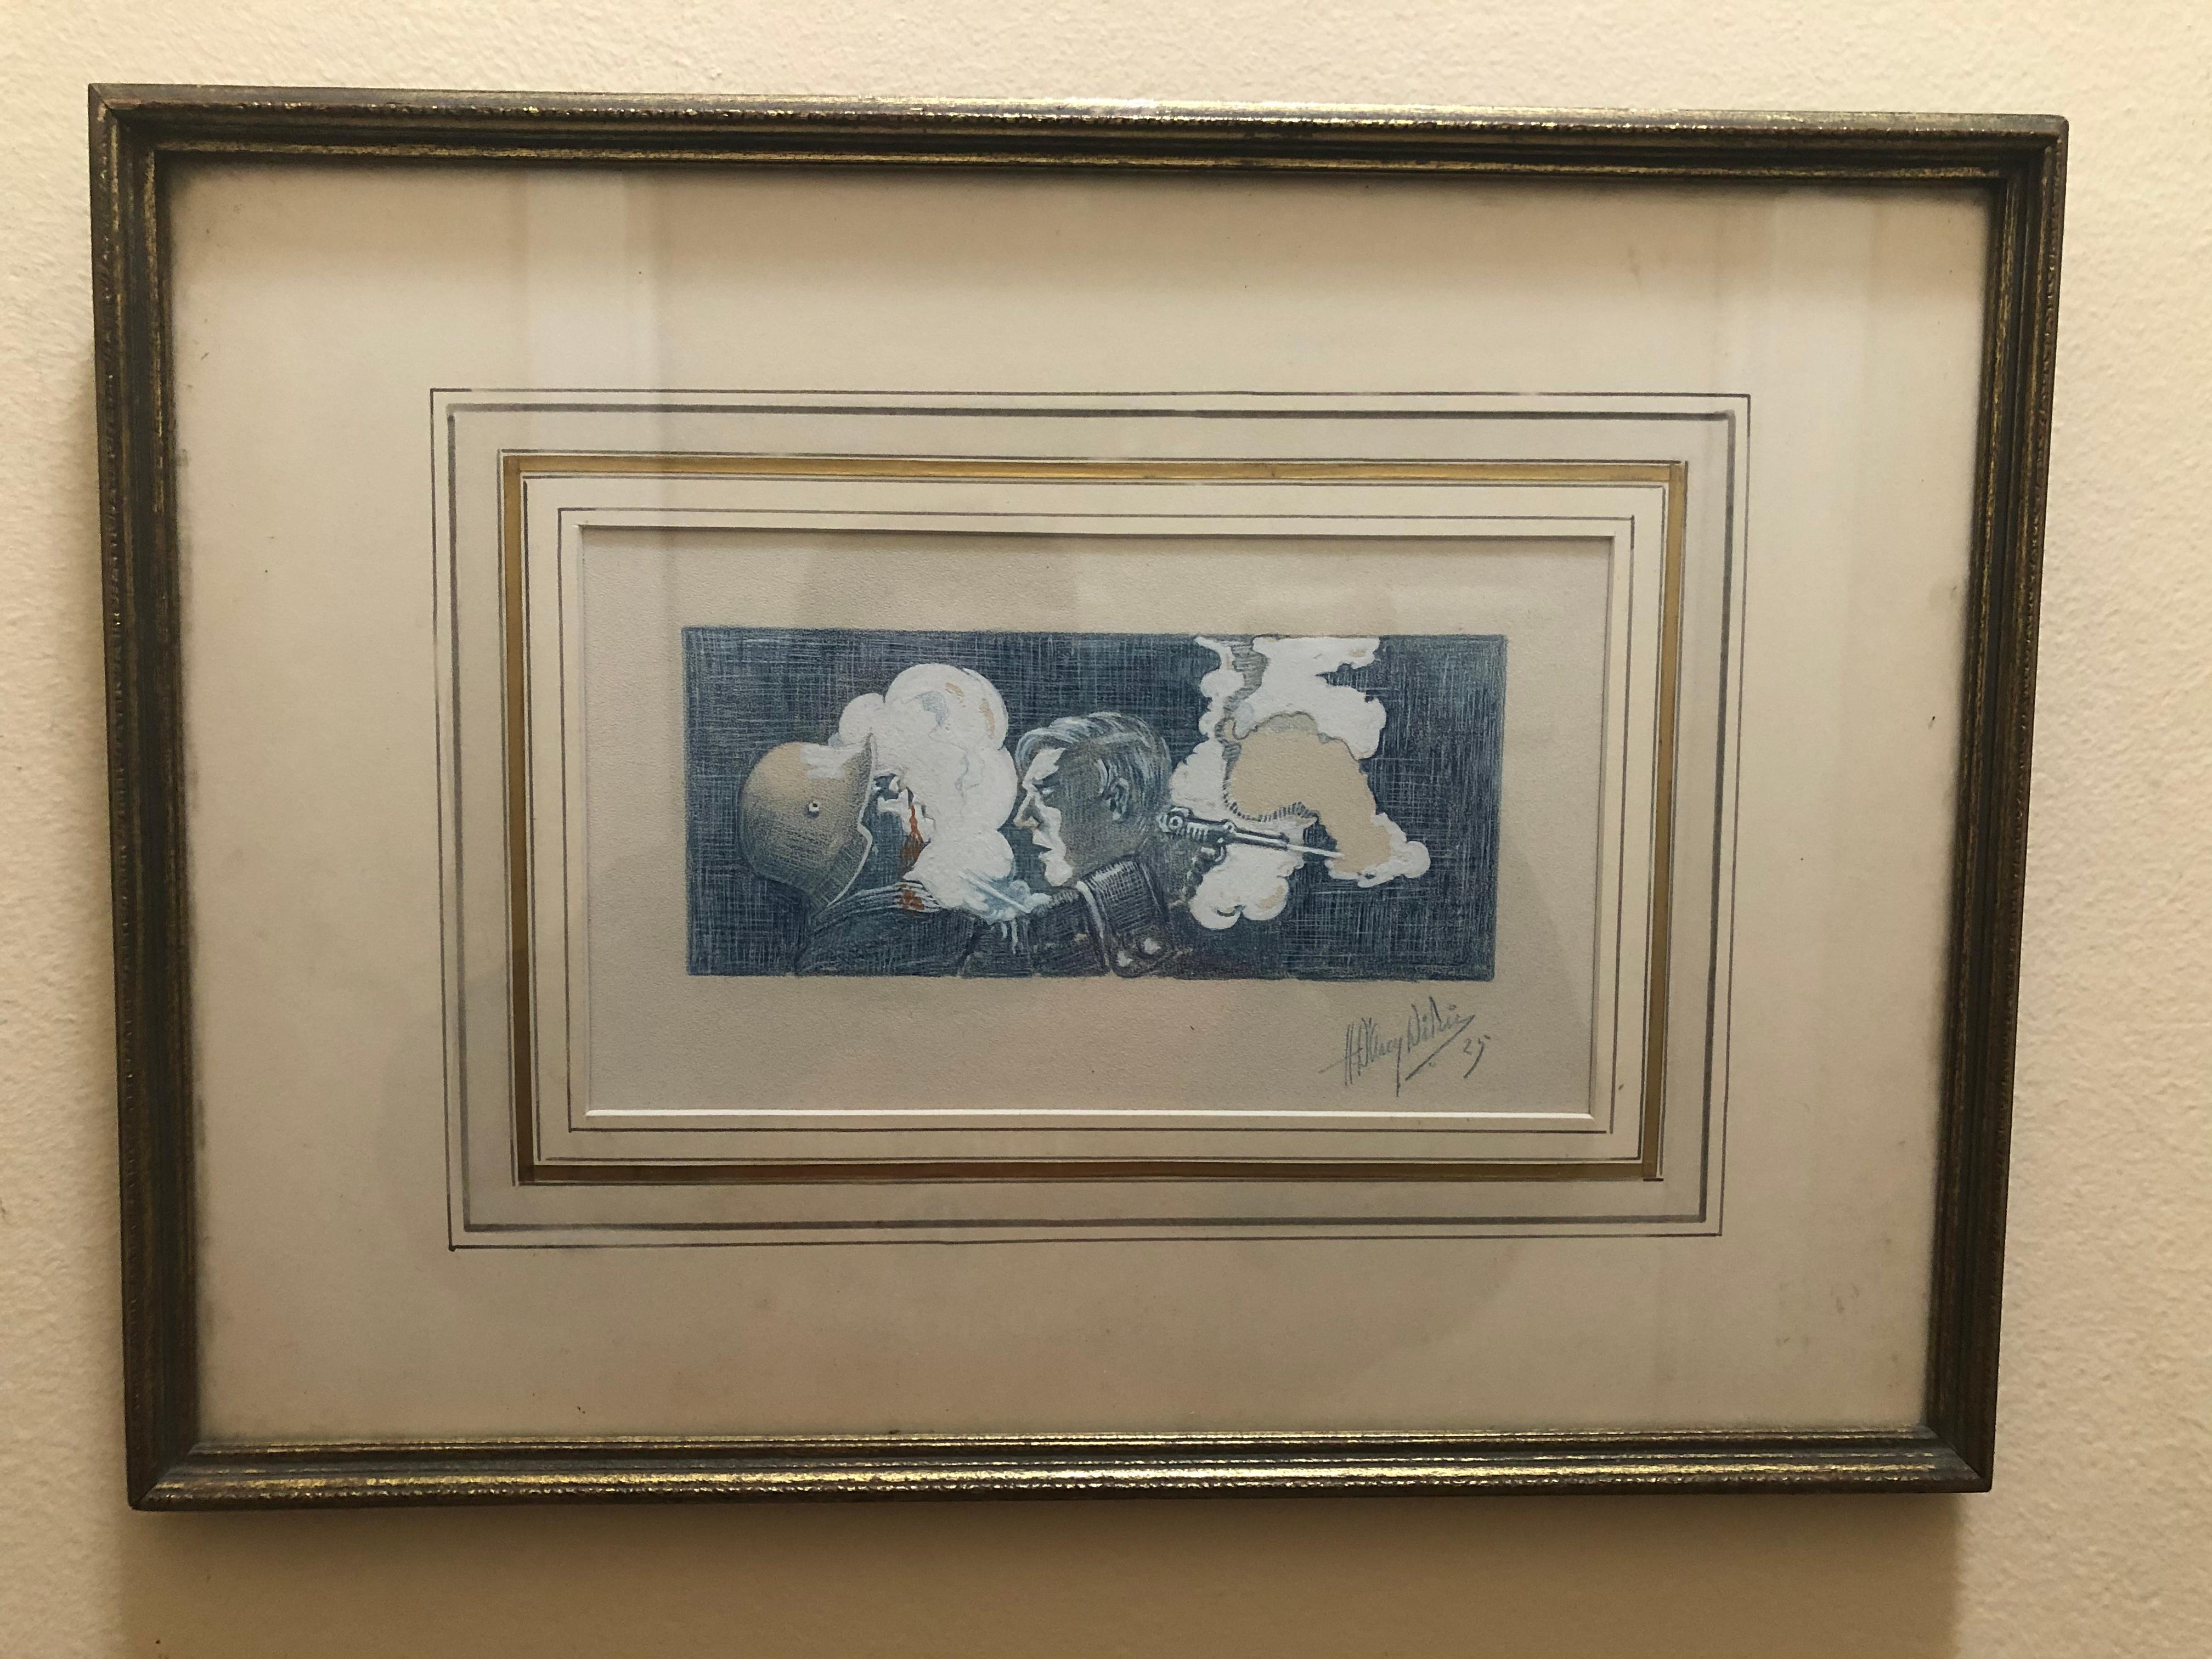 Seltenes Beispiel für Kunst aus dem Ersten Weltkrieg, signiert und datiert 1925. Das Bild zeigt entweder einen französischen oder einen amerikanischen Soldaten, nachdem er einen deutschen Soldaten erschossen hat - die Unterschrift ist unleserlich.